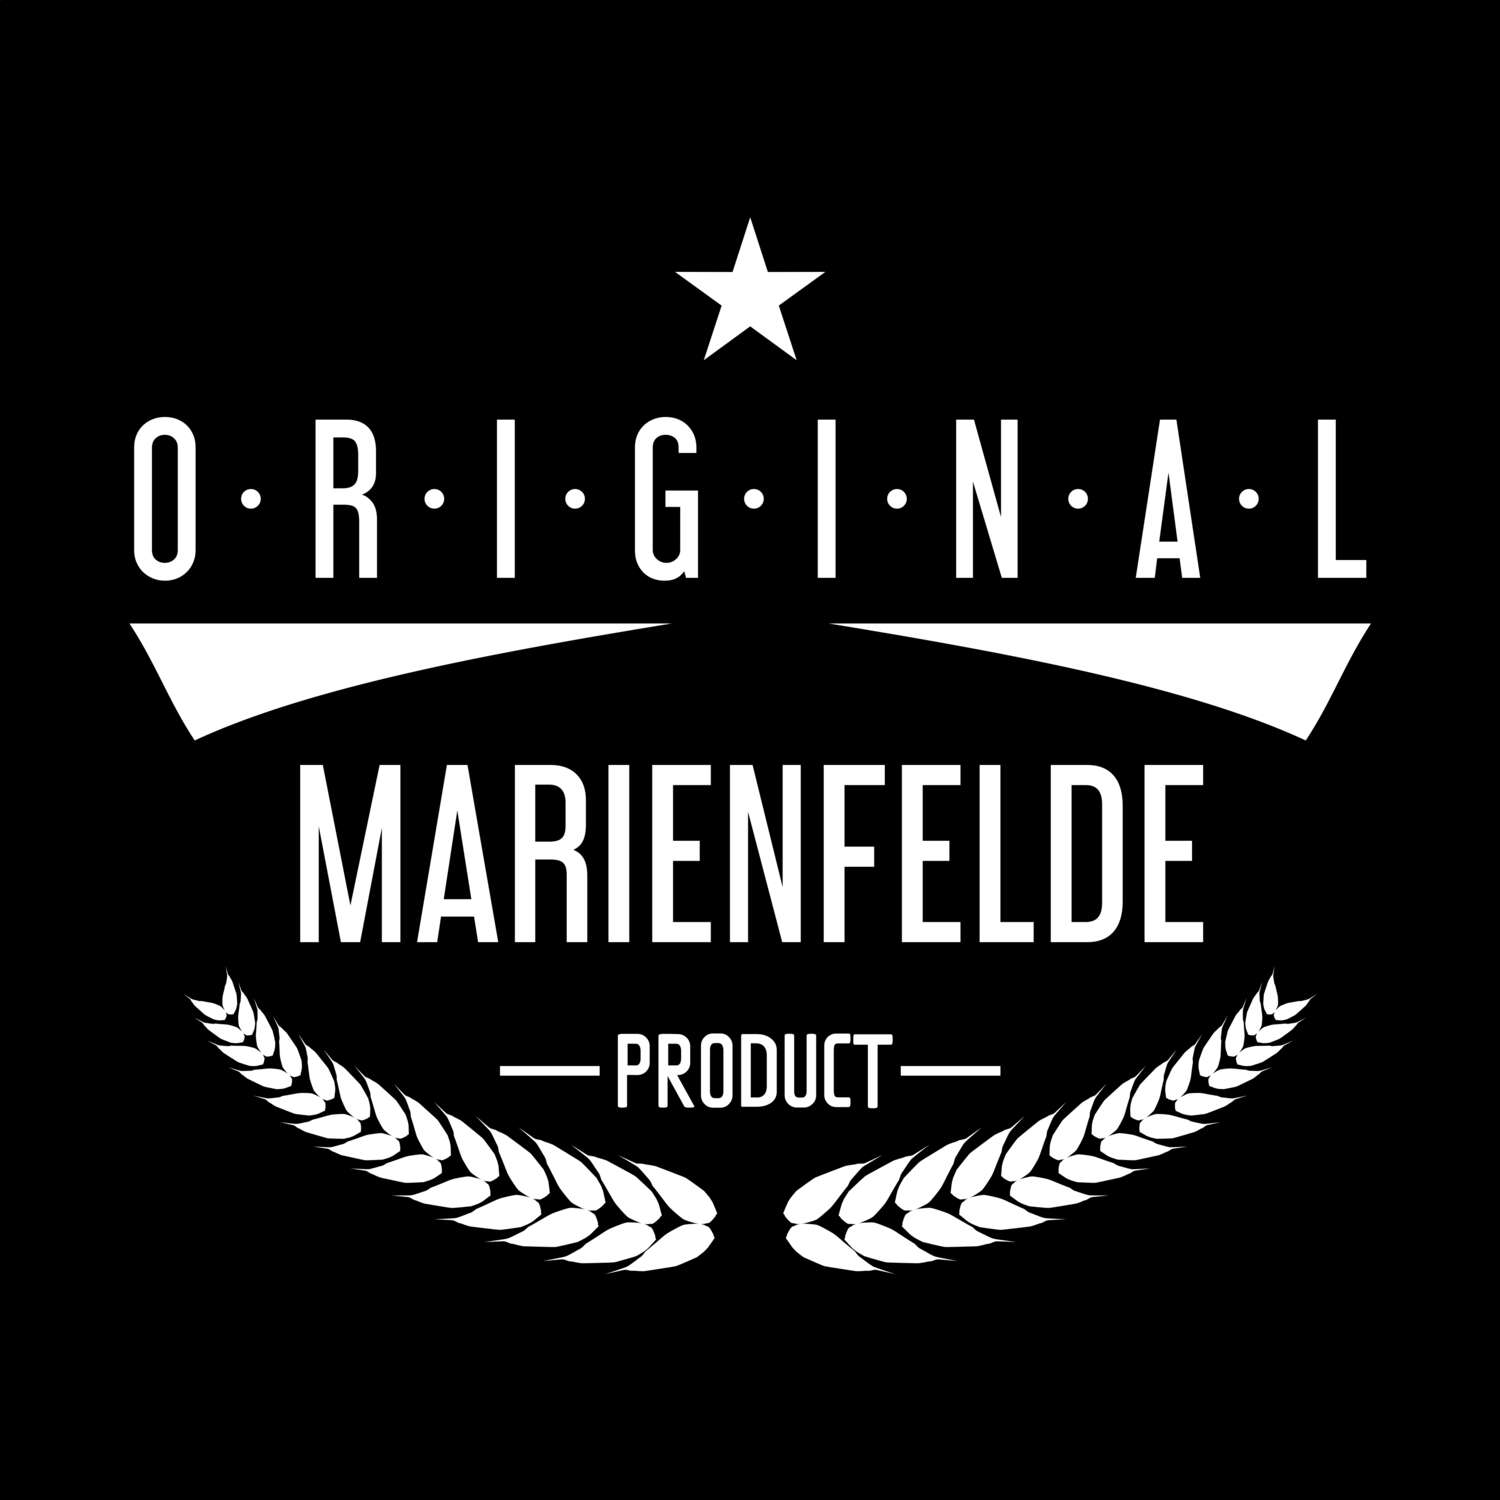 Marienfelde T-Shirt »Original Product«